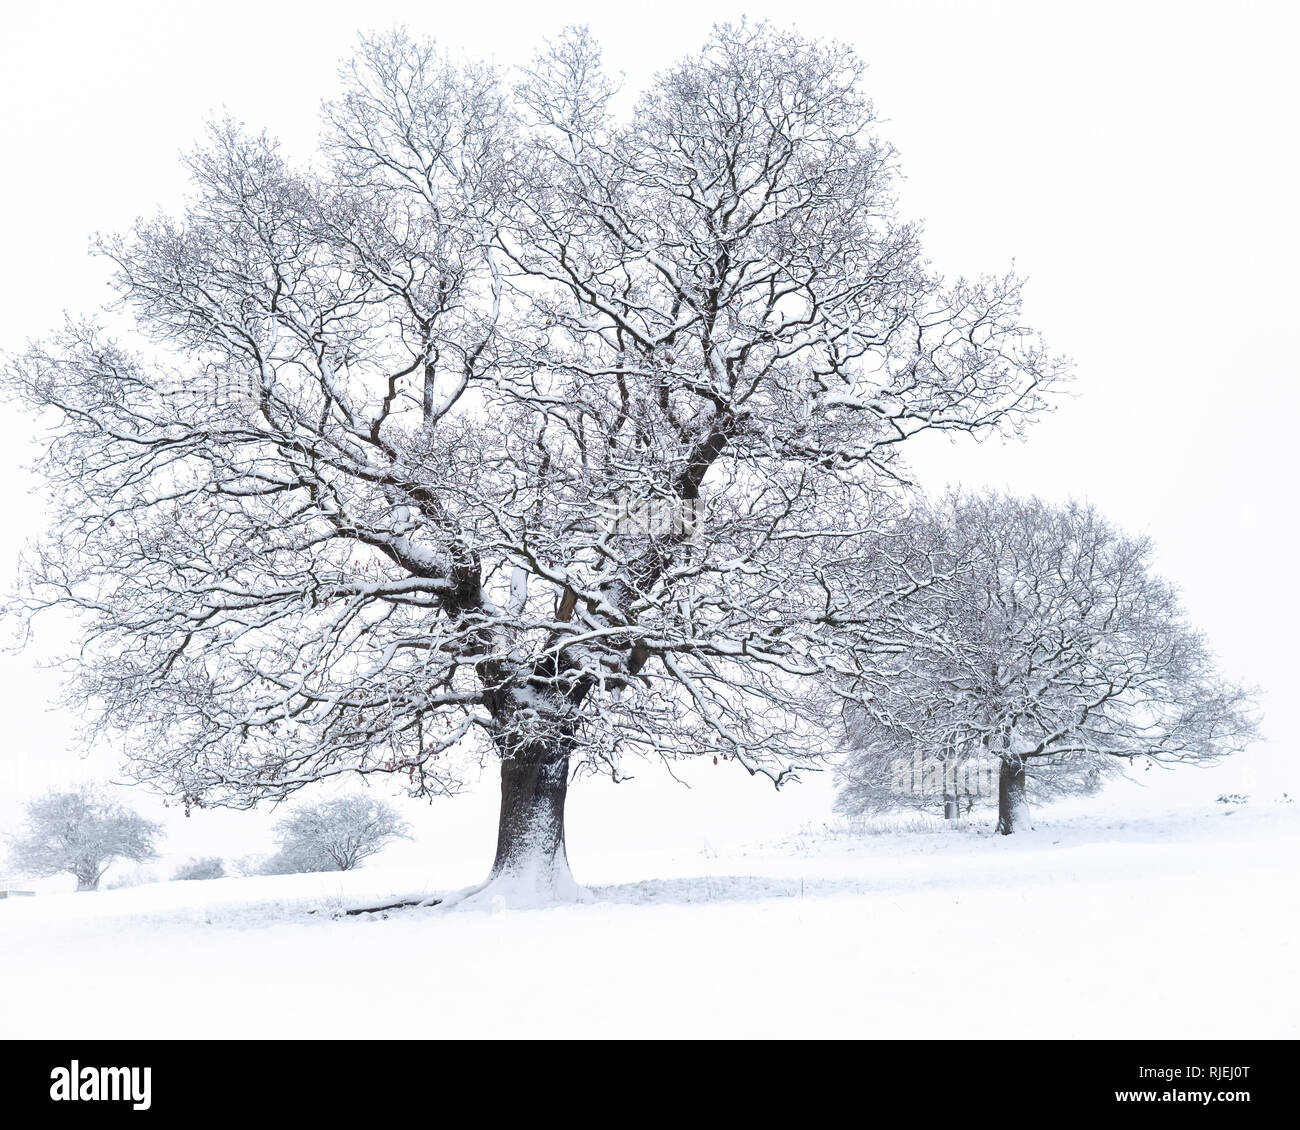 Bäume im Schnee nach starkem Schneefall, Jan2019, Cheshire Vereinigtes Königreich Stockfoto